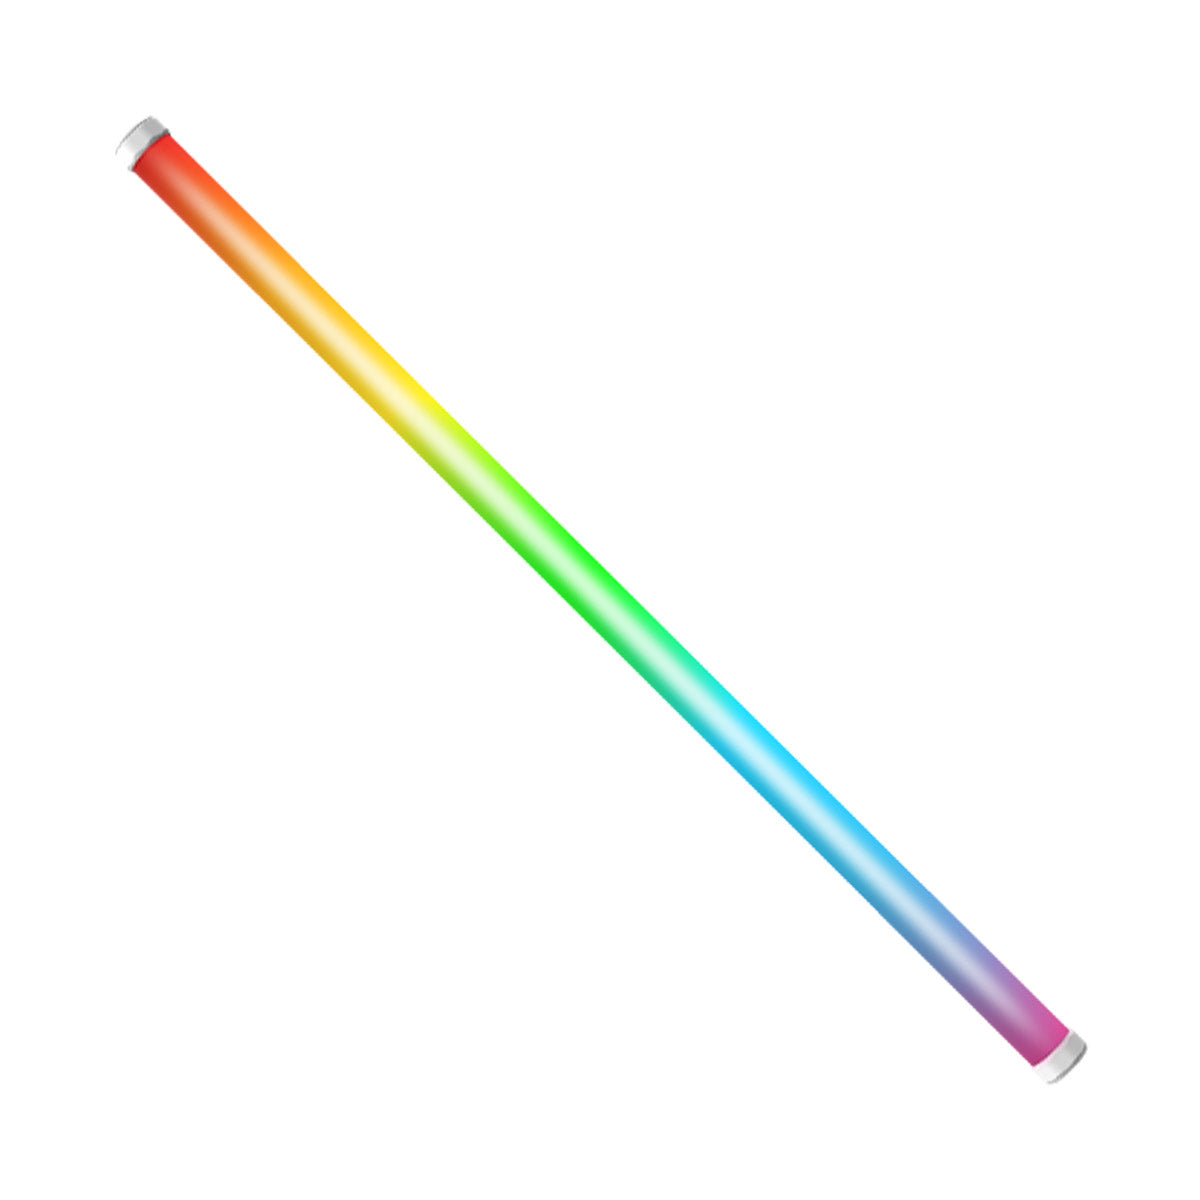 Amaran PT4c - Pixel Tube RGB LED Light (4')